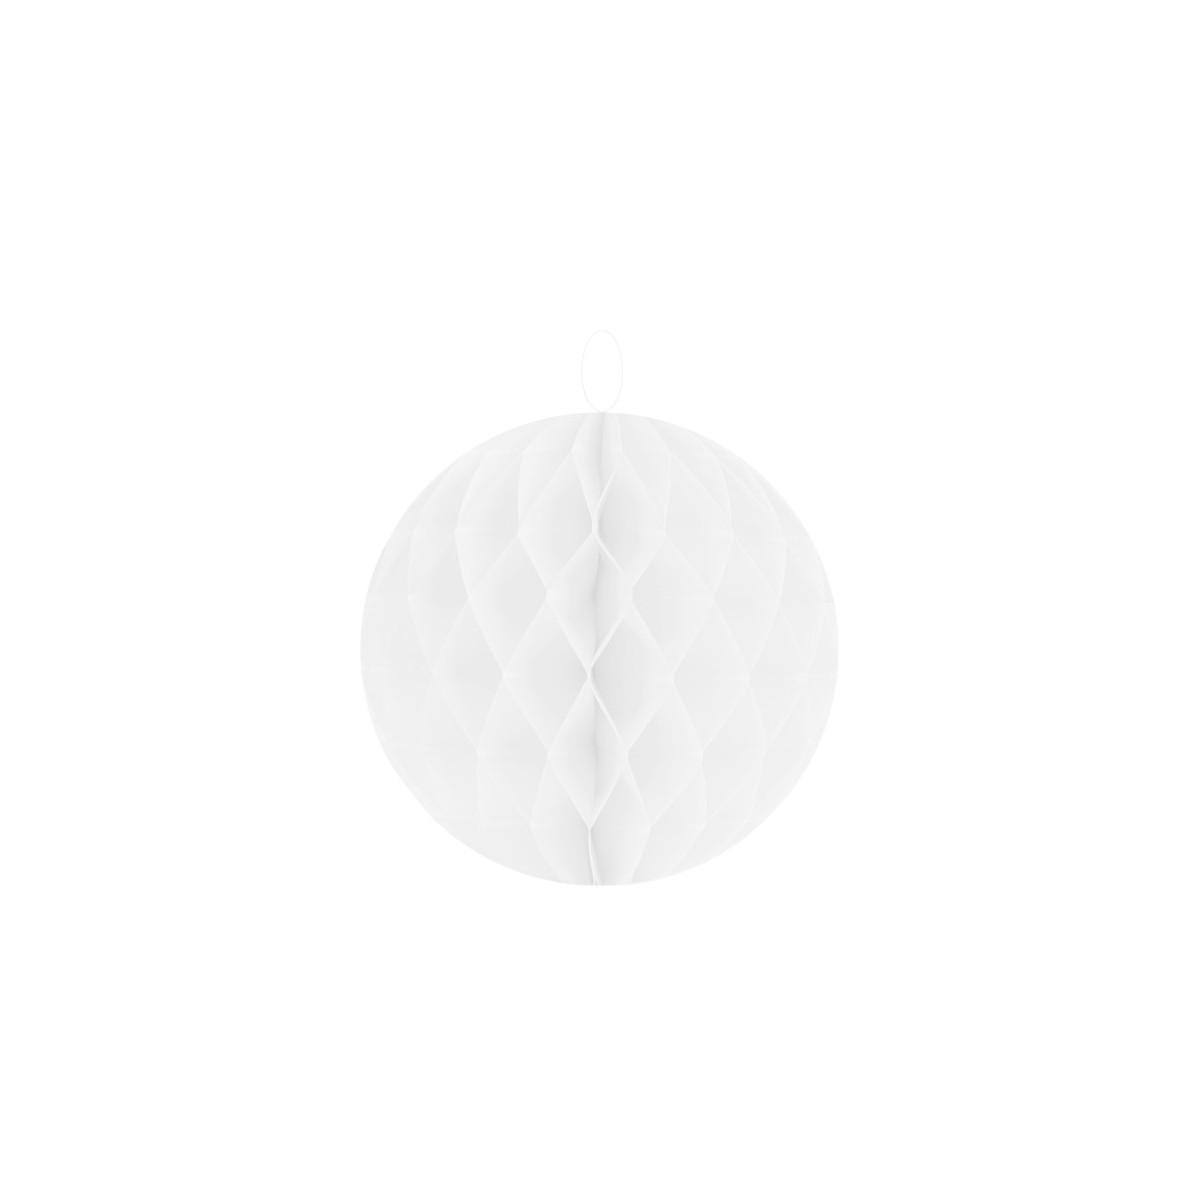 Boule alvéolée blanche 20 cm